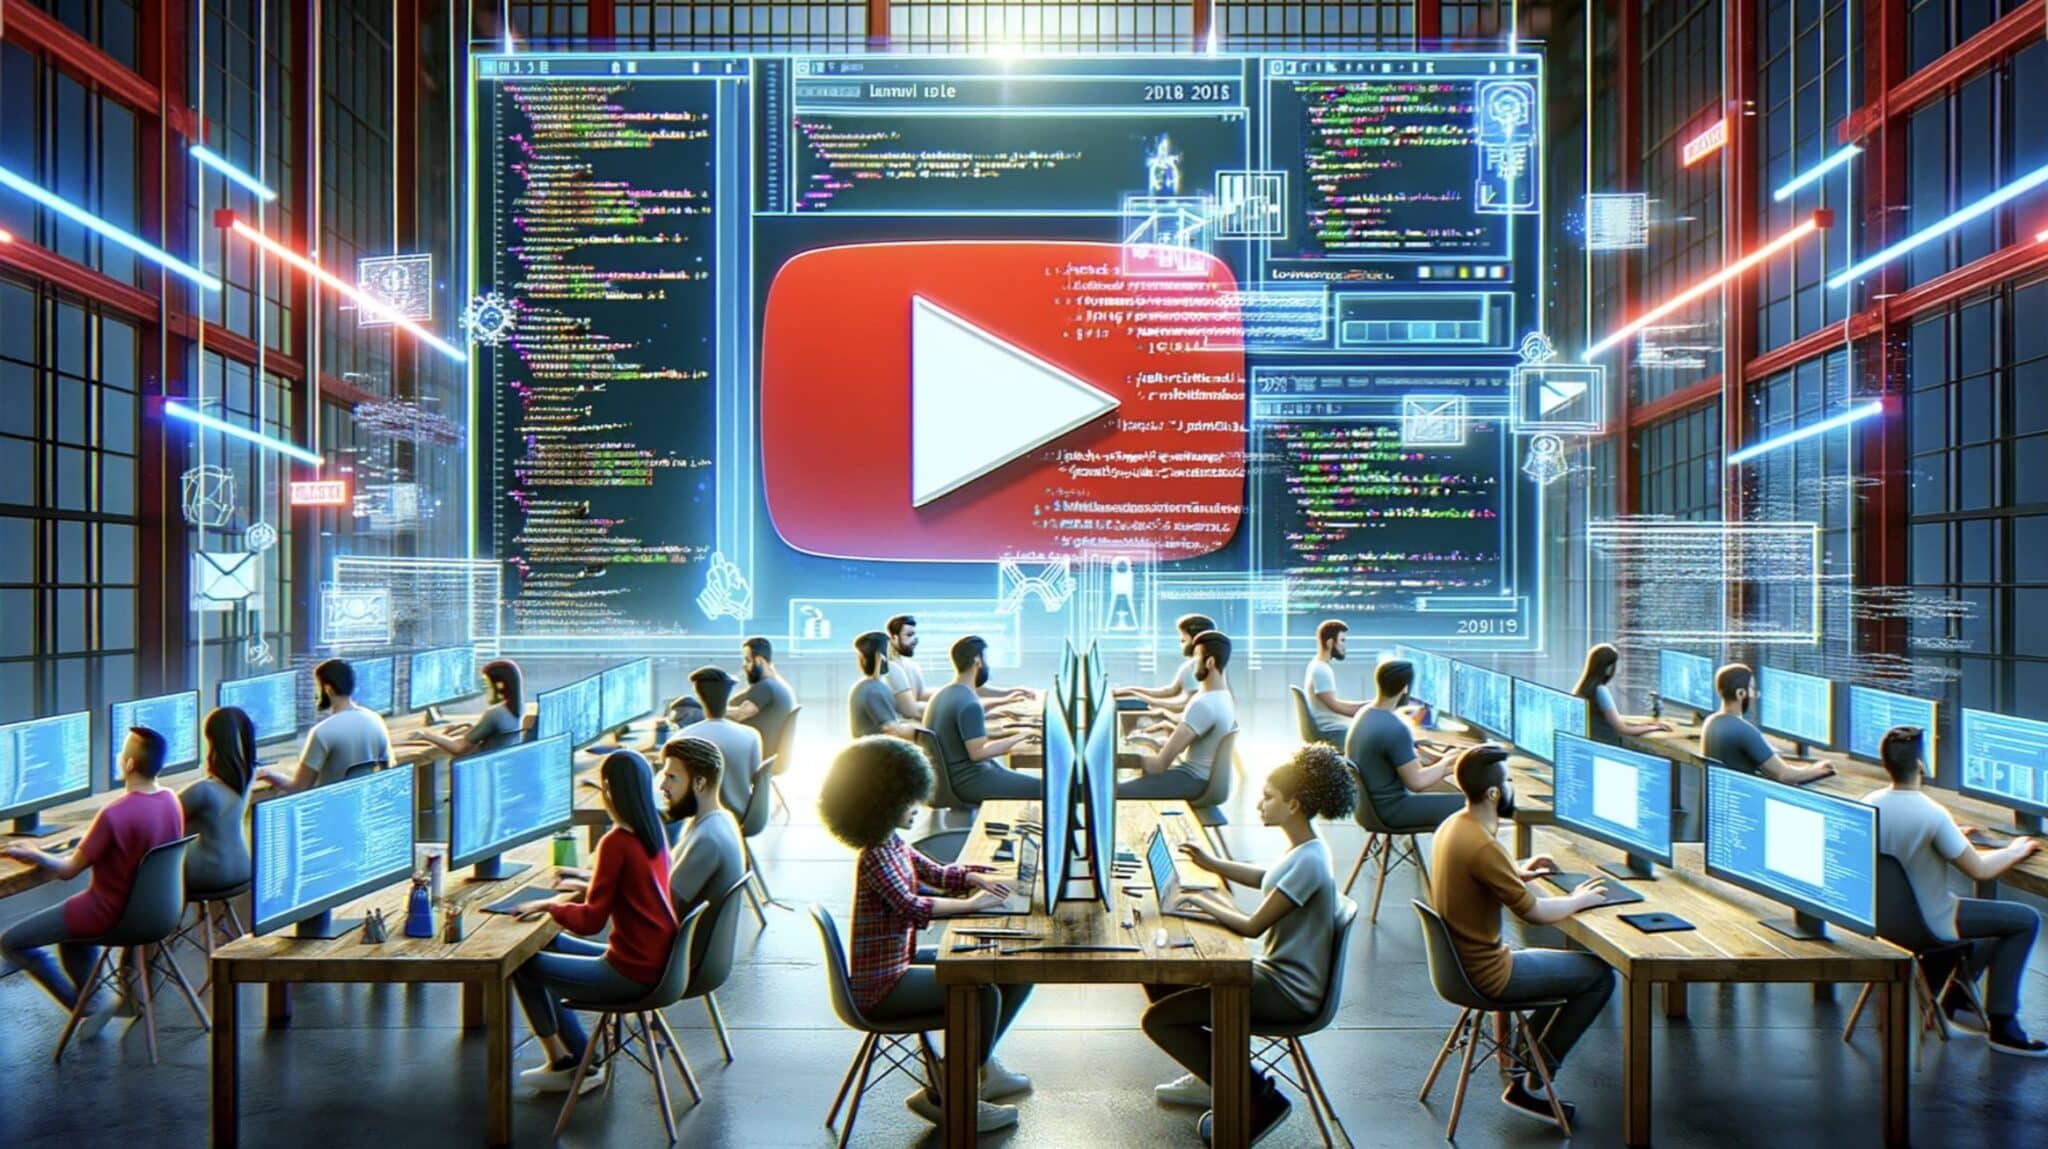 Apakah YouTube masih ditulis dalam PHP? Evolusi Tumpukan Teknologi YouTube: Melampaui PHP